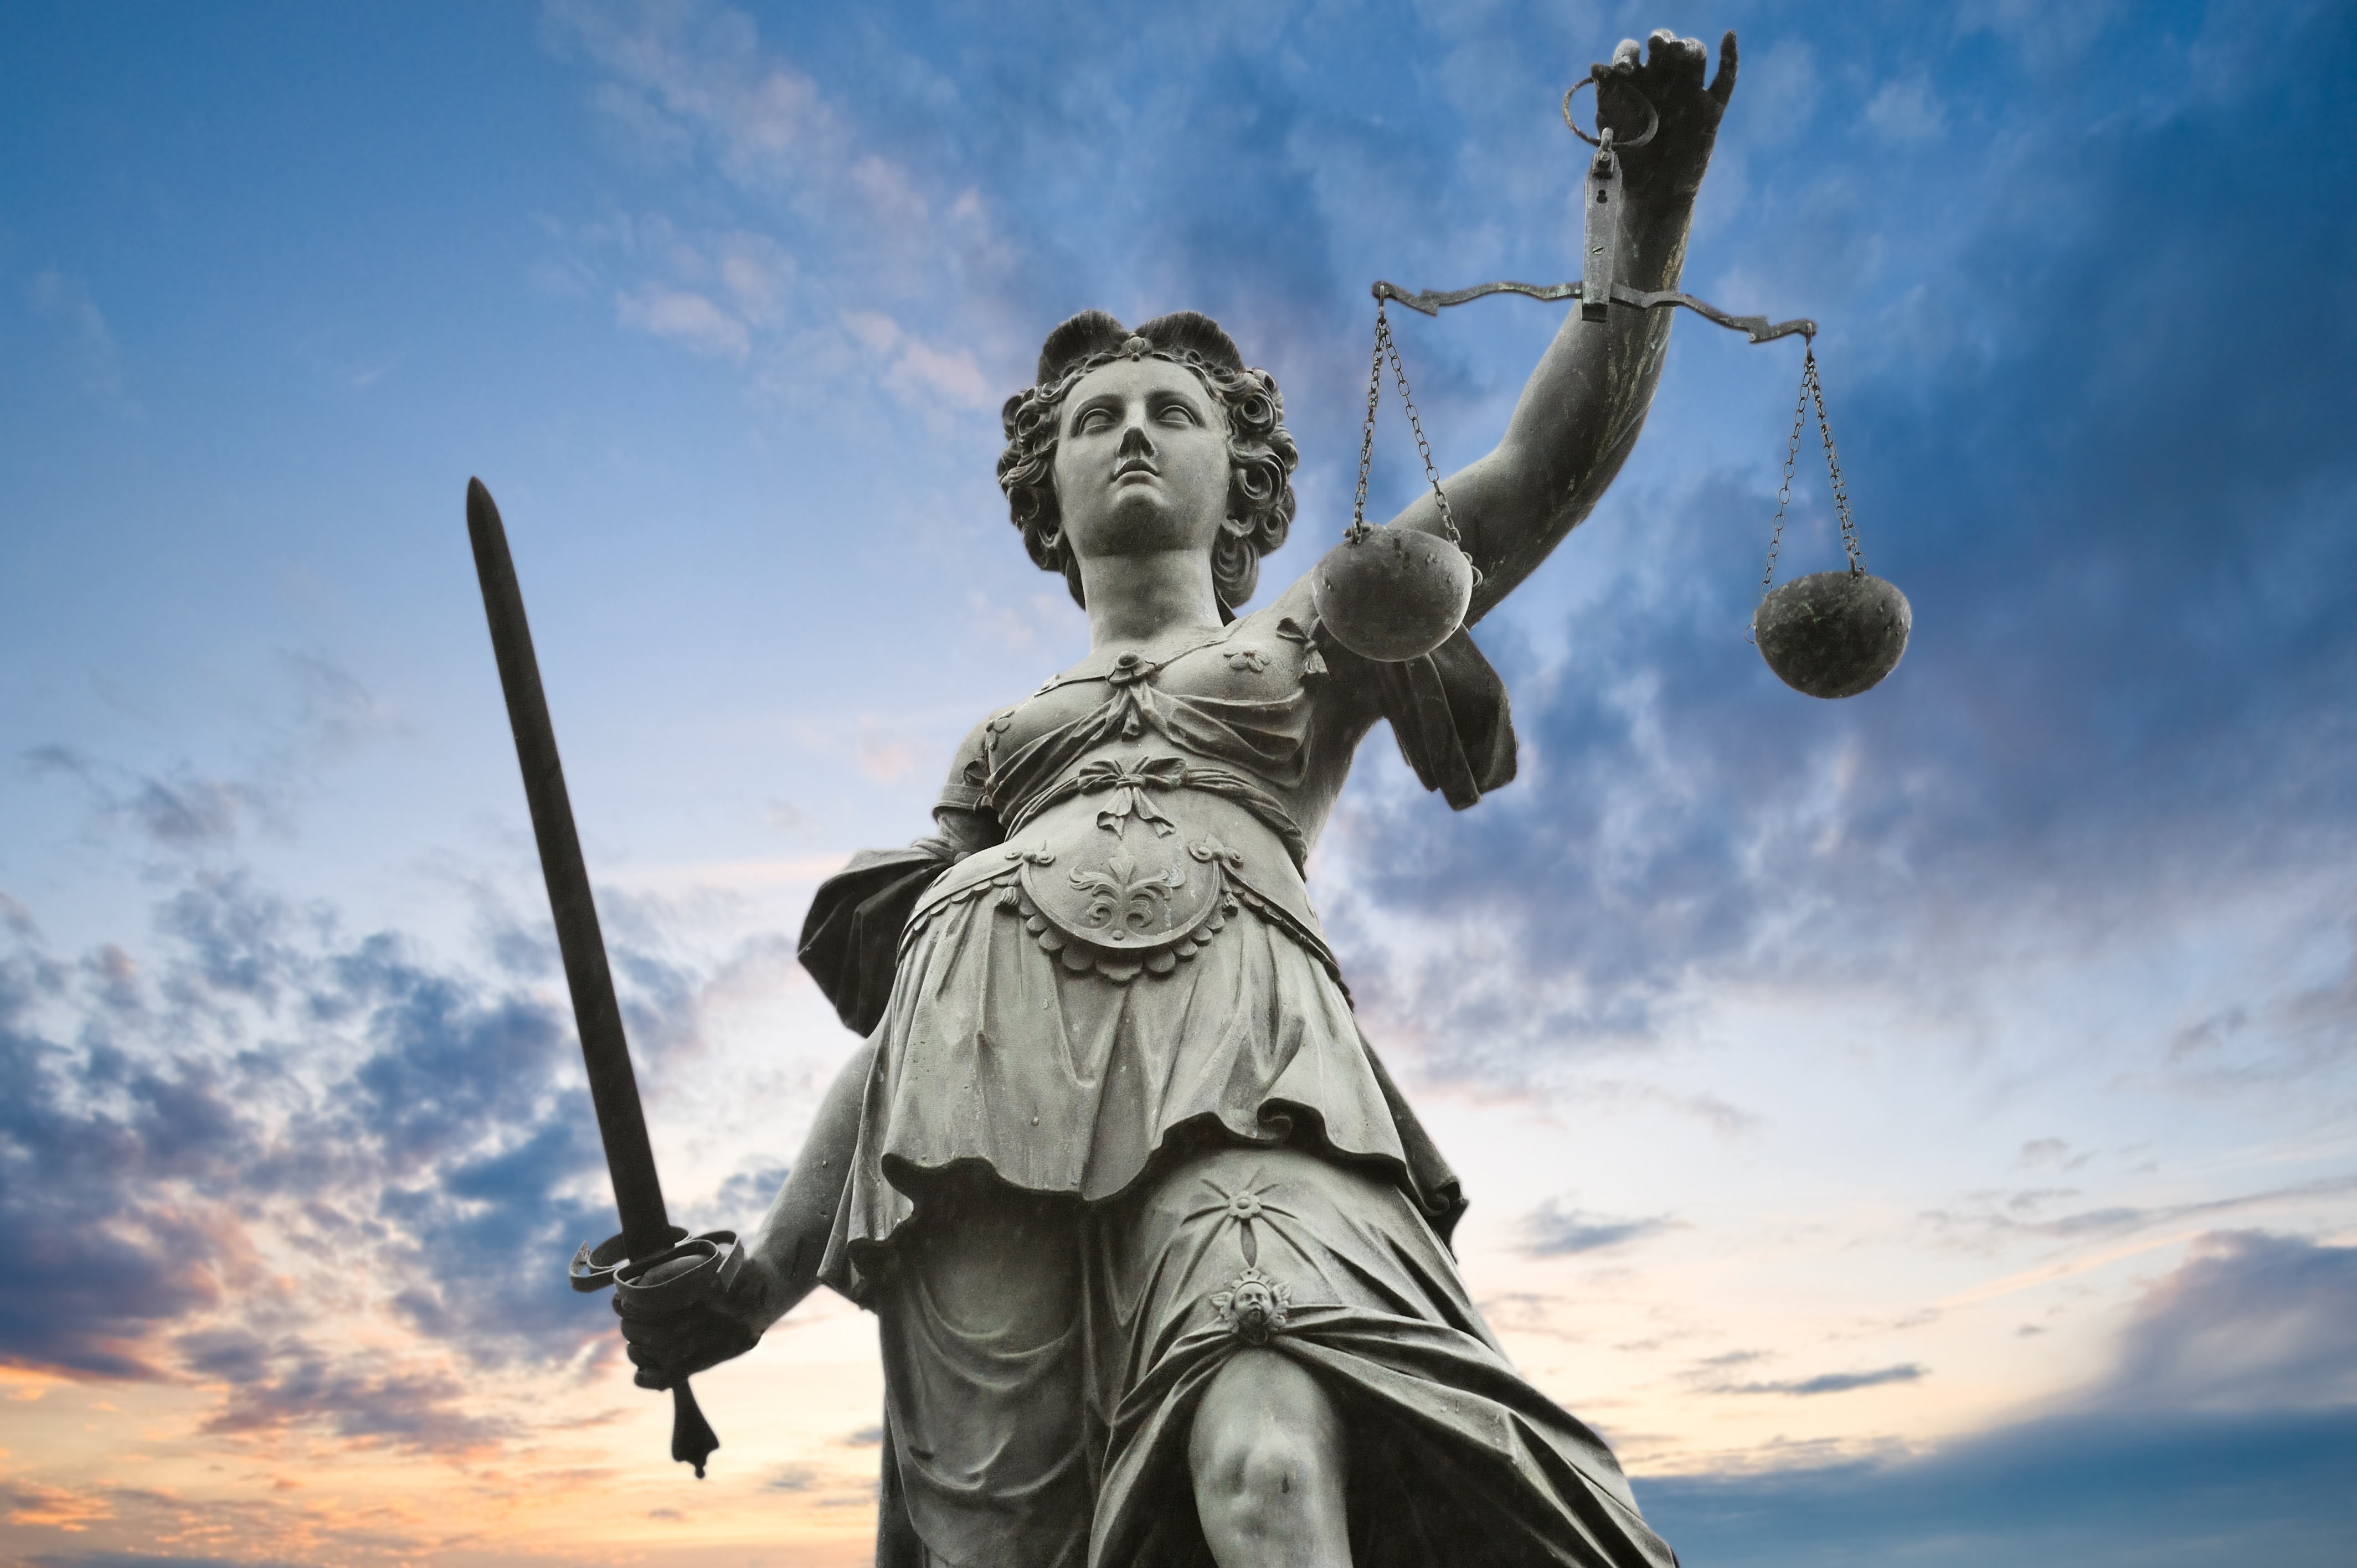 Chronique judiciaire : un excès de colère